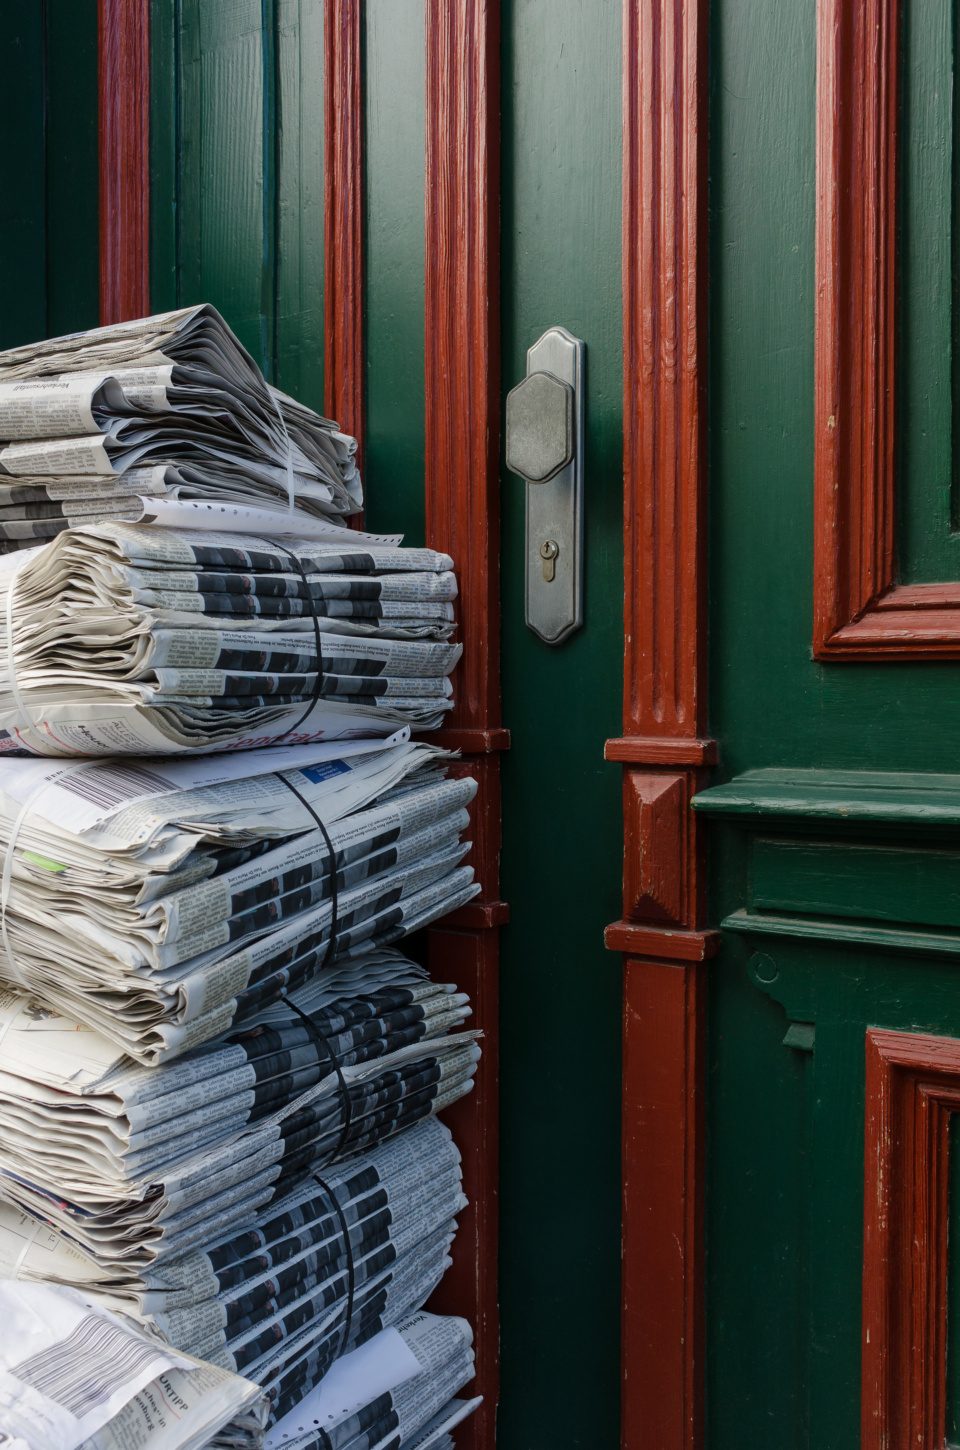 newspapers by door